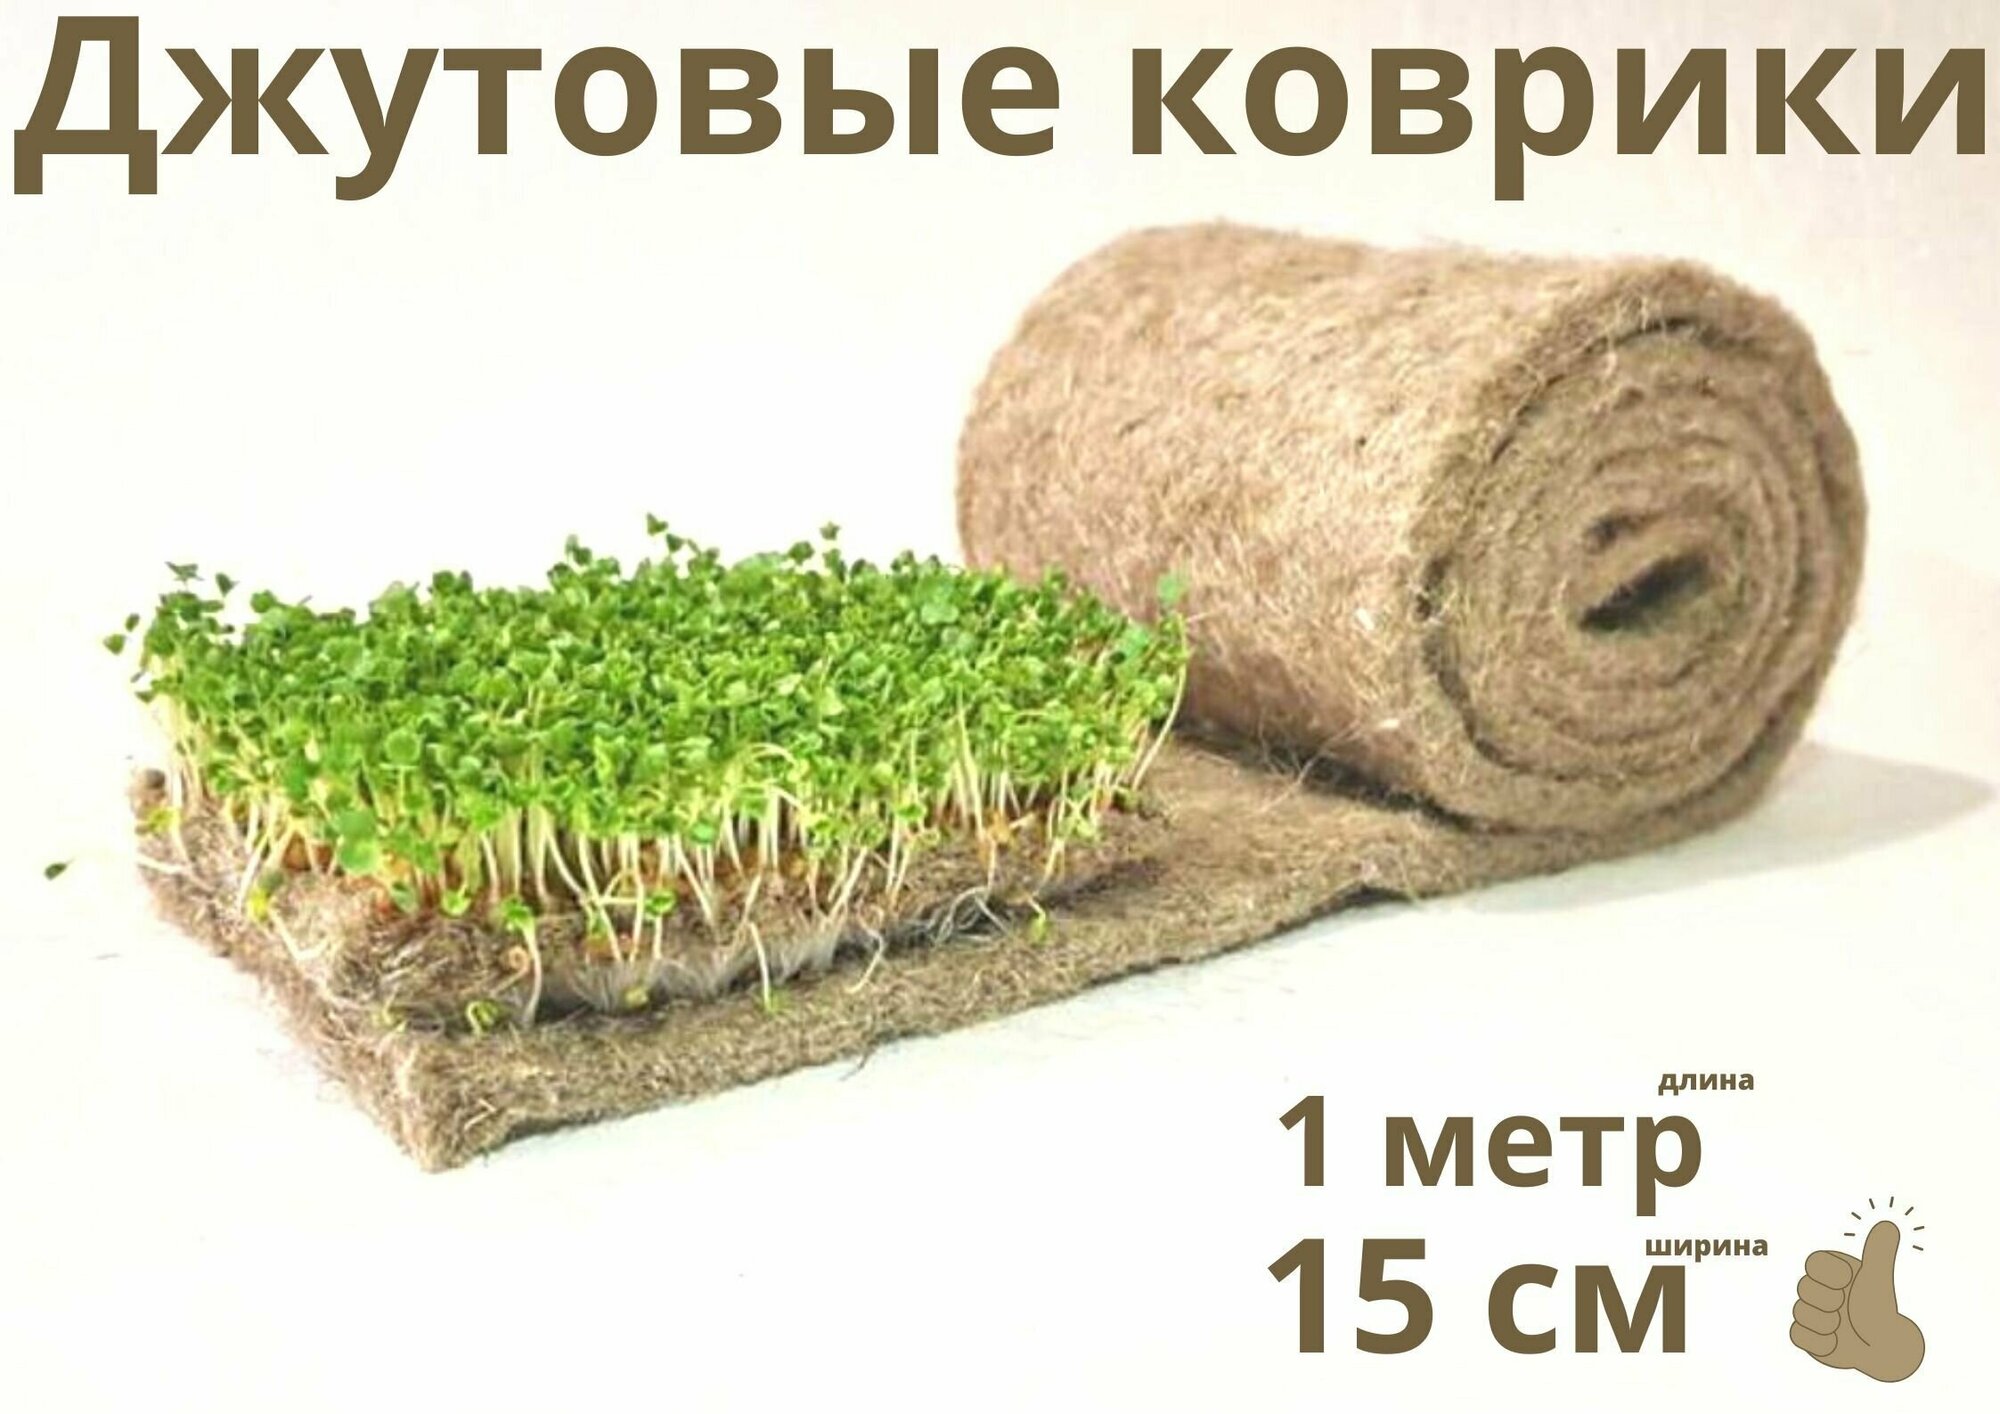 Джутовый коврик для выращивания микрозелени или в подстилку животным в рулоне 15 см*1 метр - фотография № 1